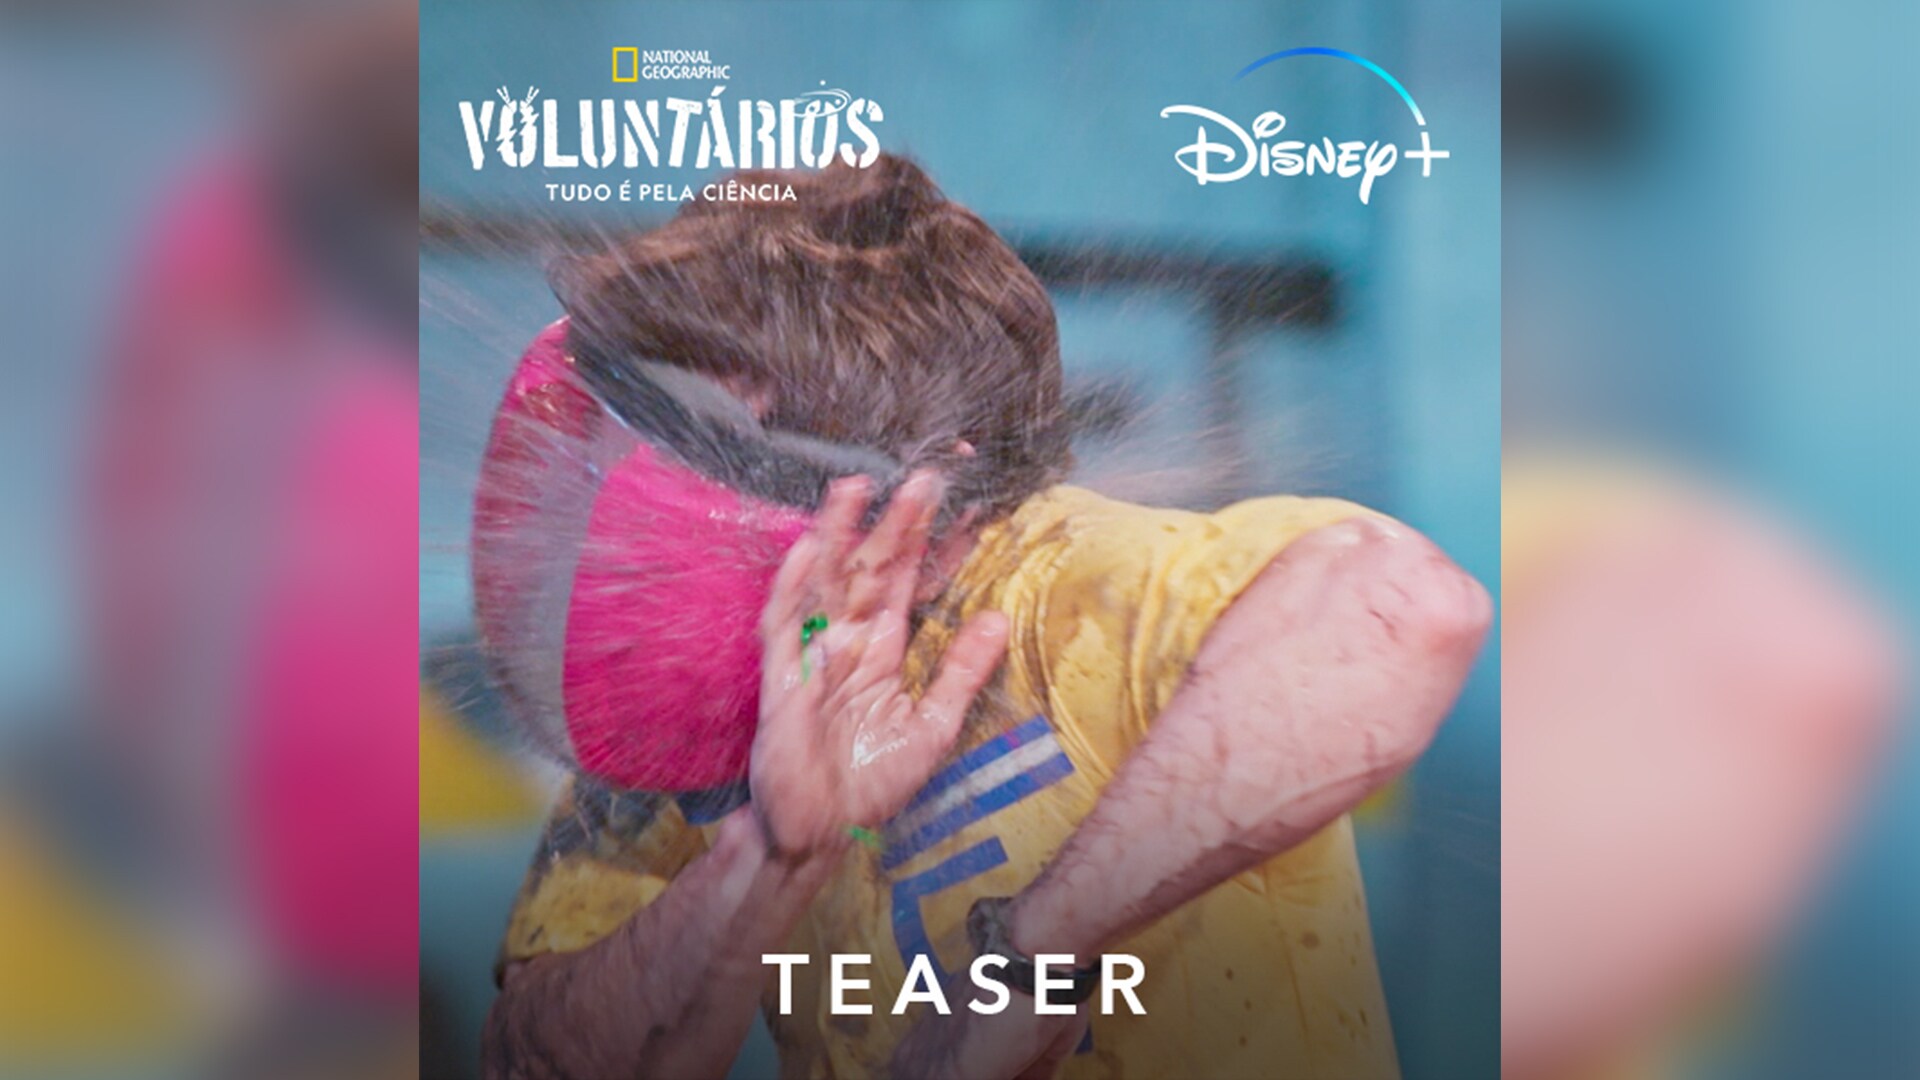 Voluntários: Tudo Pela Ciência | Trailer Oficial | Disney+